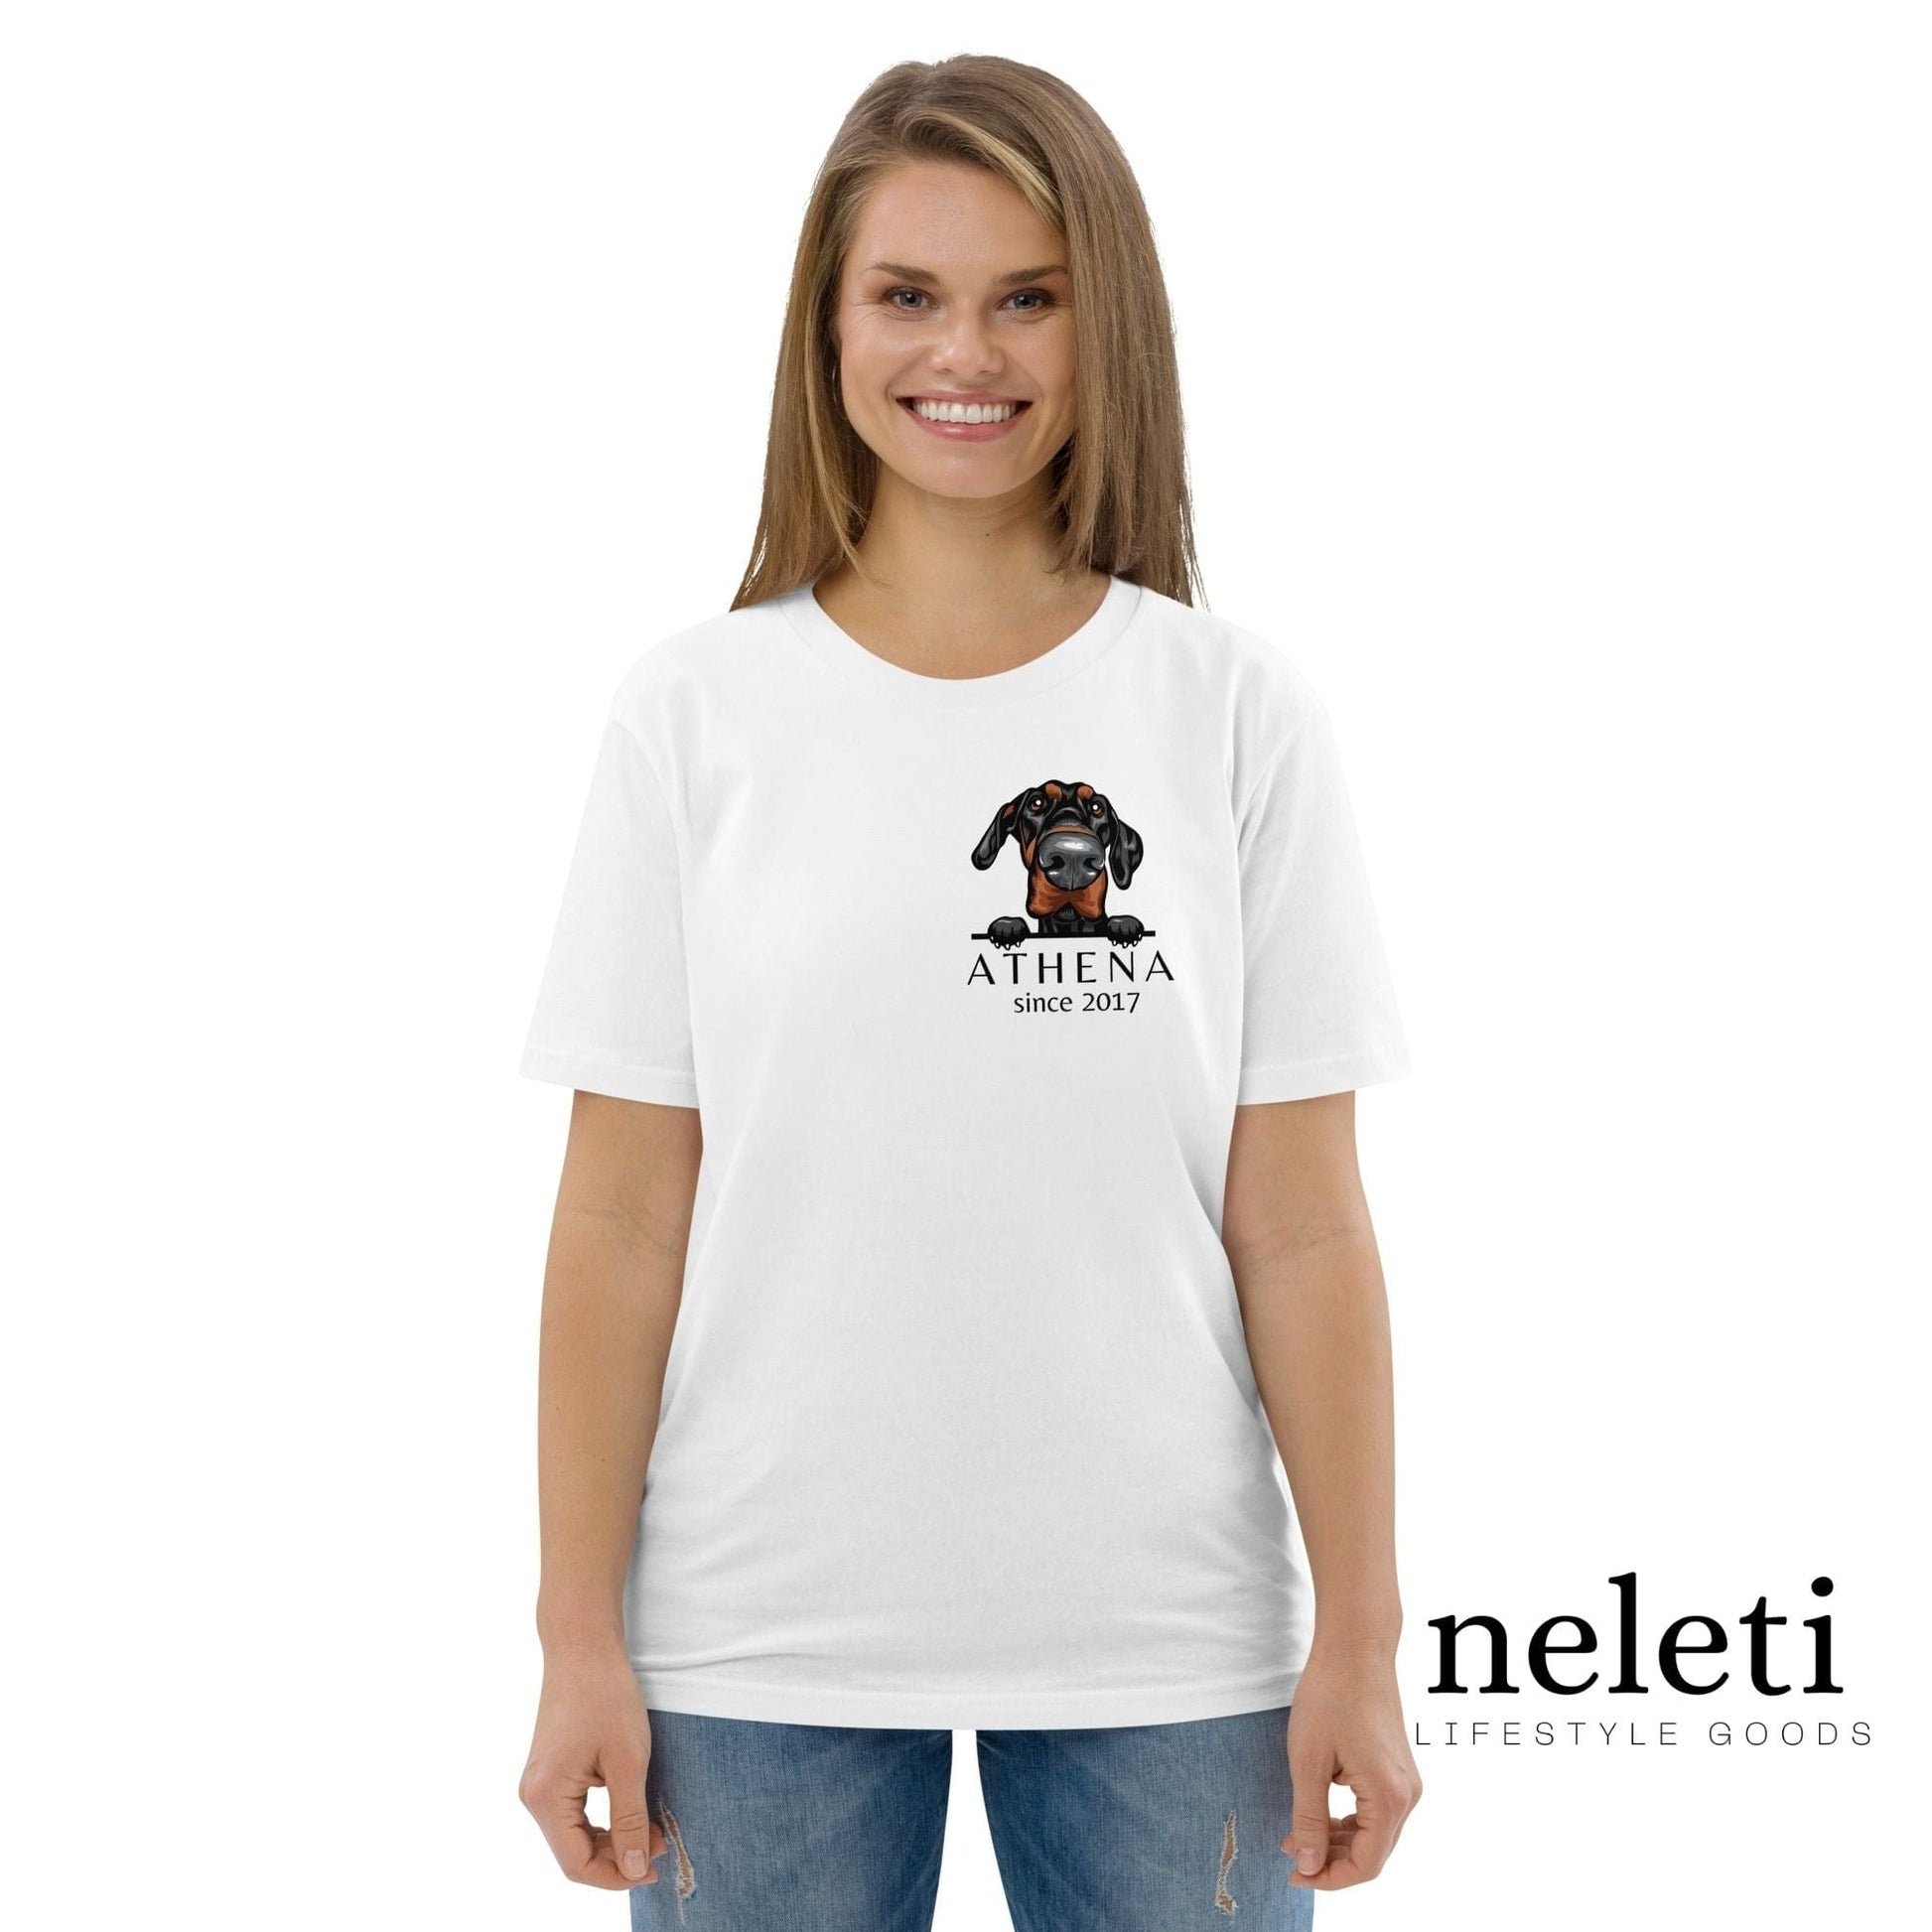 neleti.com-custom-white-shirt-for-dog-mom